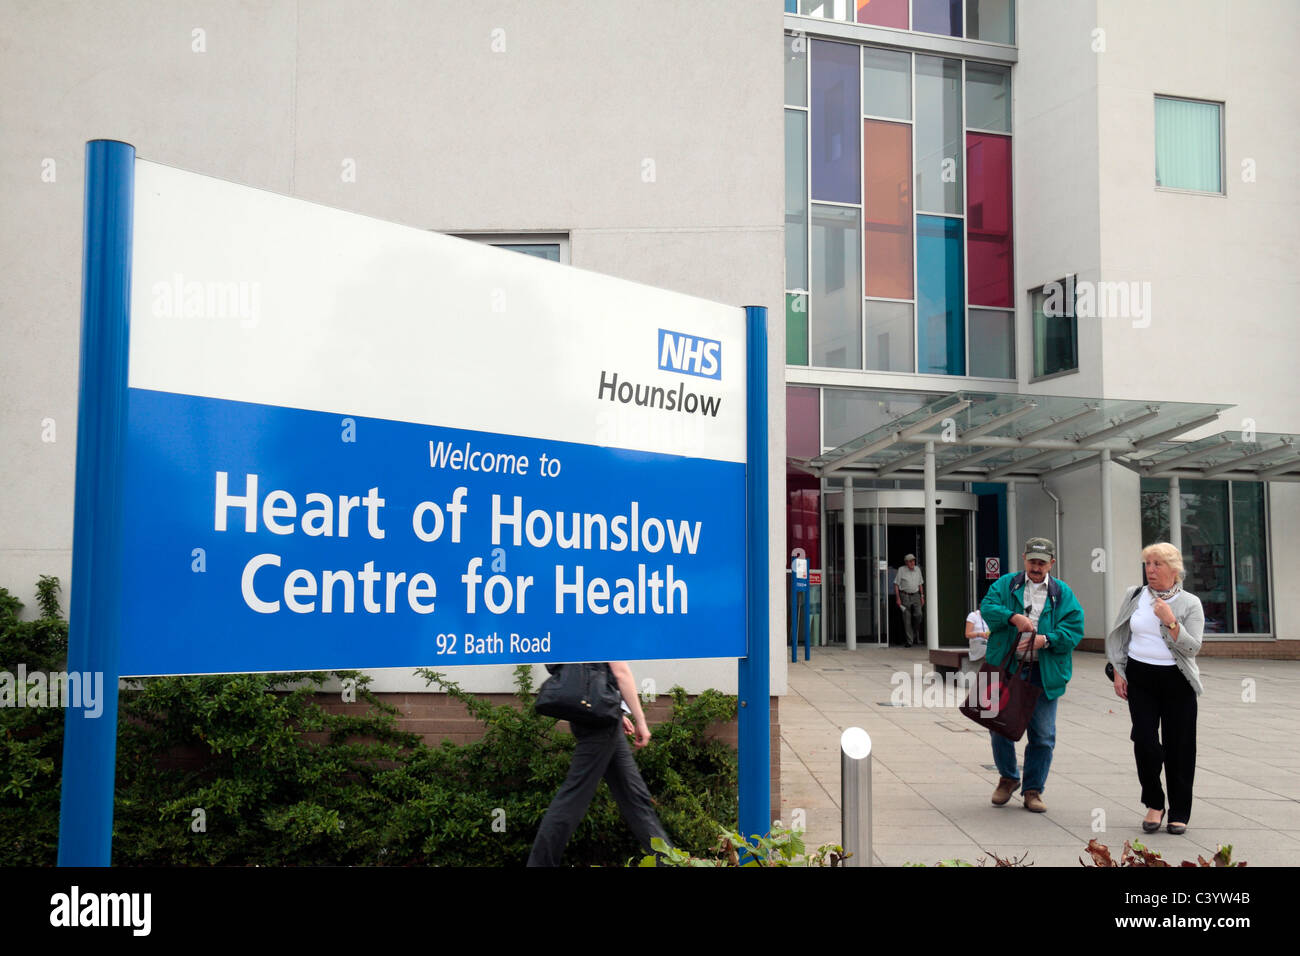 Le Service National de Santé (NHS) Coeur de Hounslow Centre for Health à Hounslow, Middx, UK. Banque D'Images